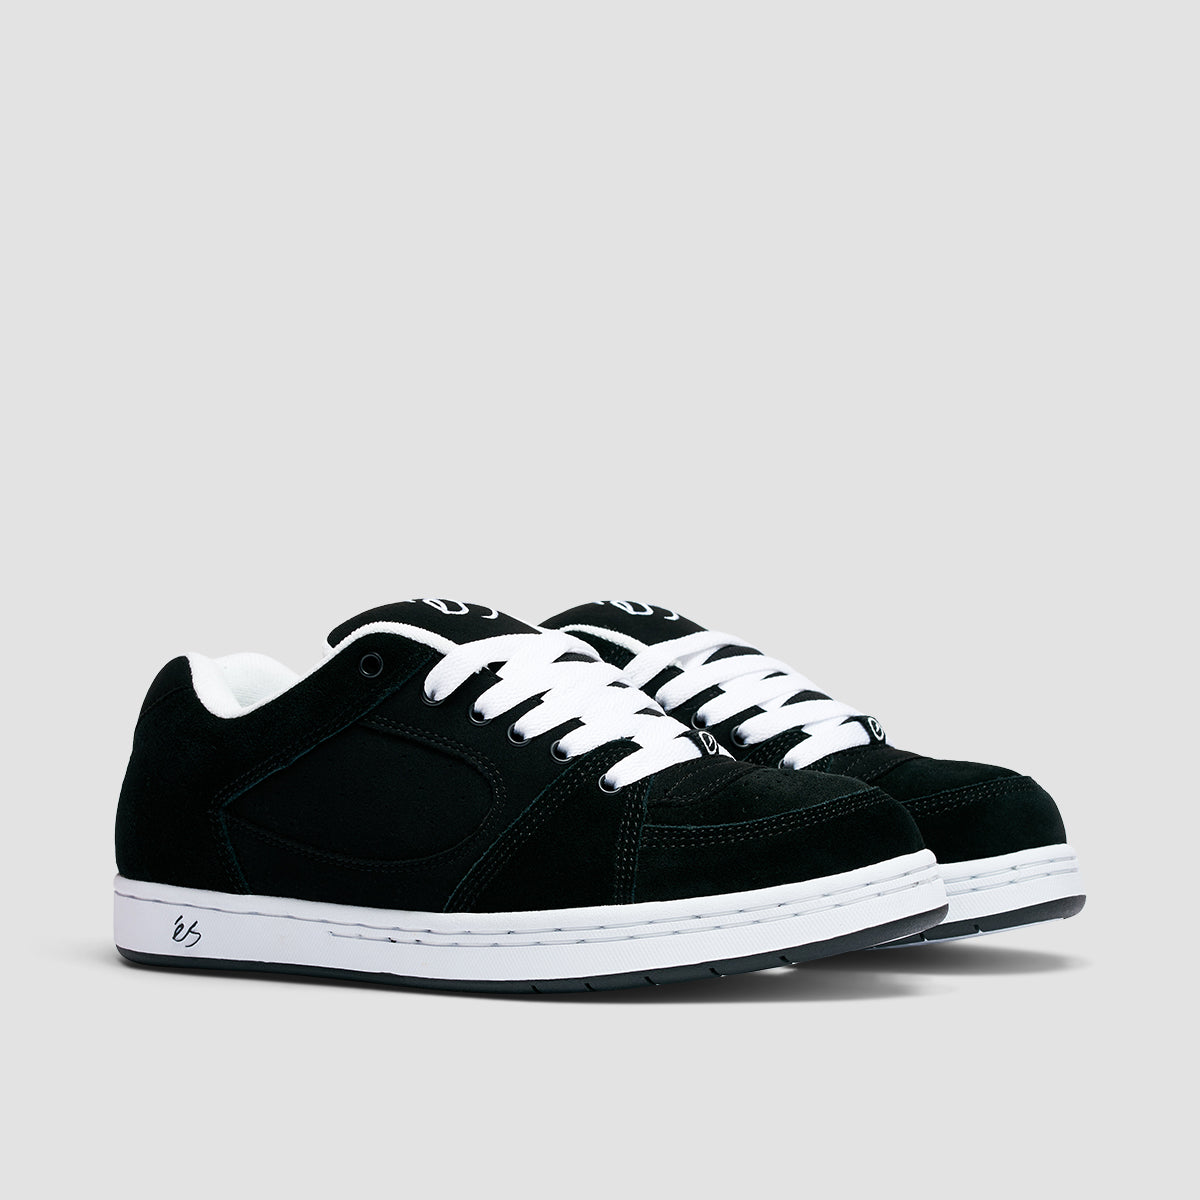 eS Accel OG Shoes - Black/White/Black